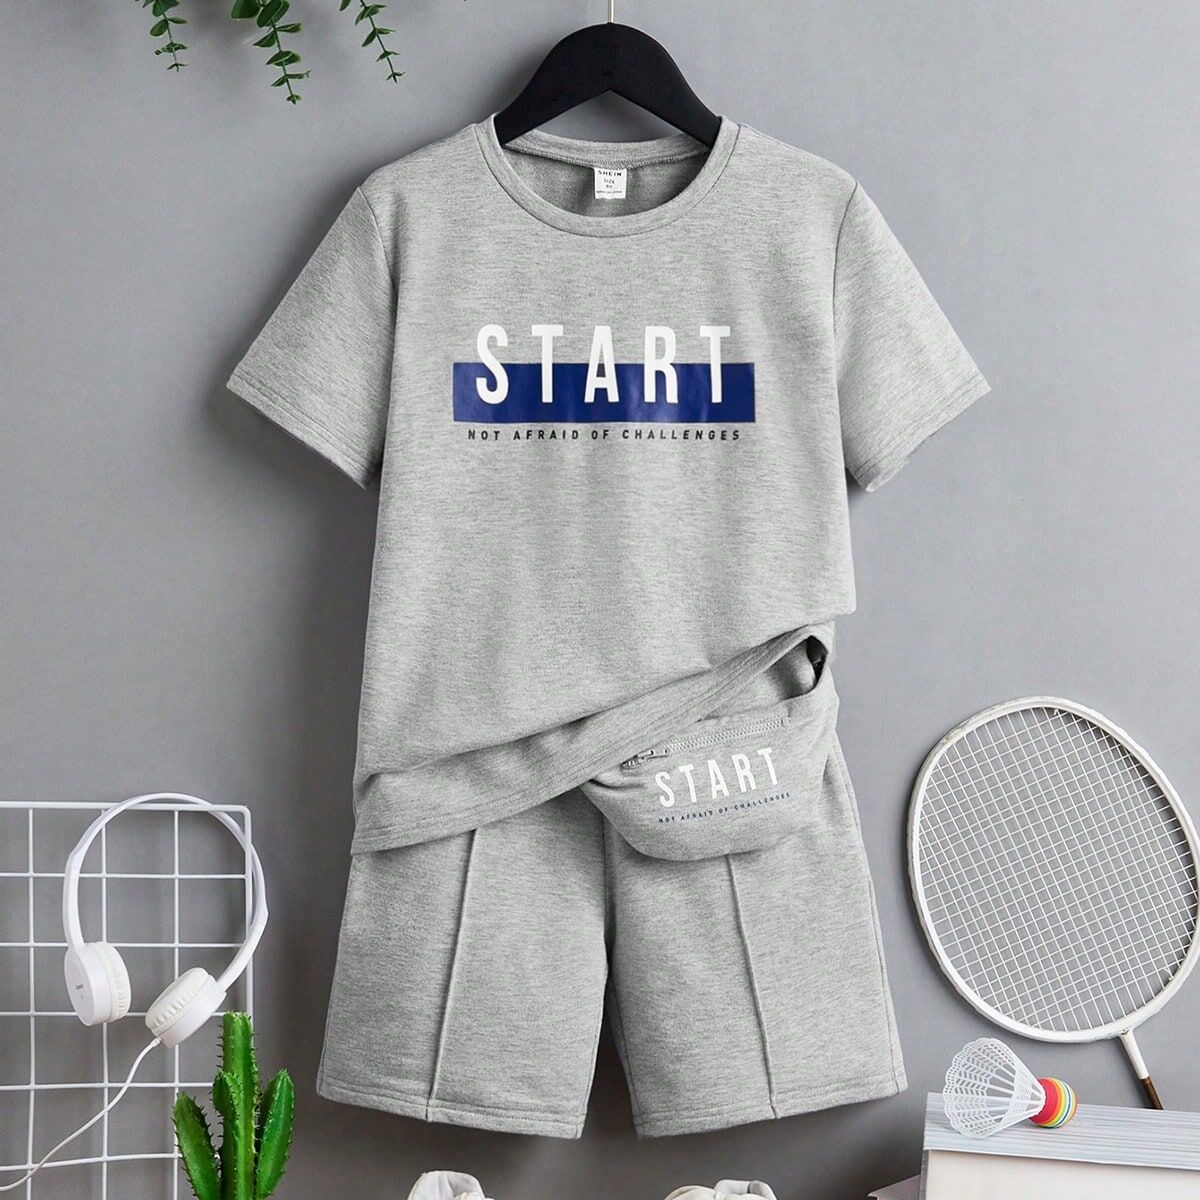 SHEIN Teen Boys' Casual Letter Print T-Shirt And Elastic Waist Shorts Set With Bag Accessories Grey 14Y,13Y,16Y,15Y Boys